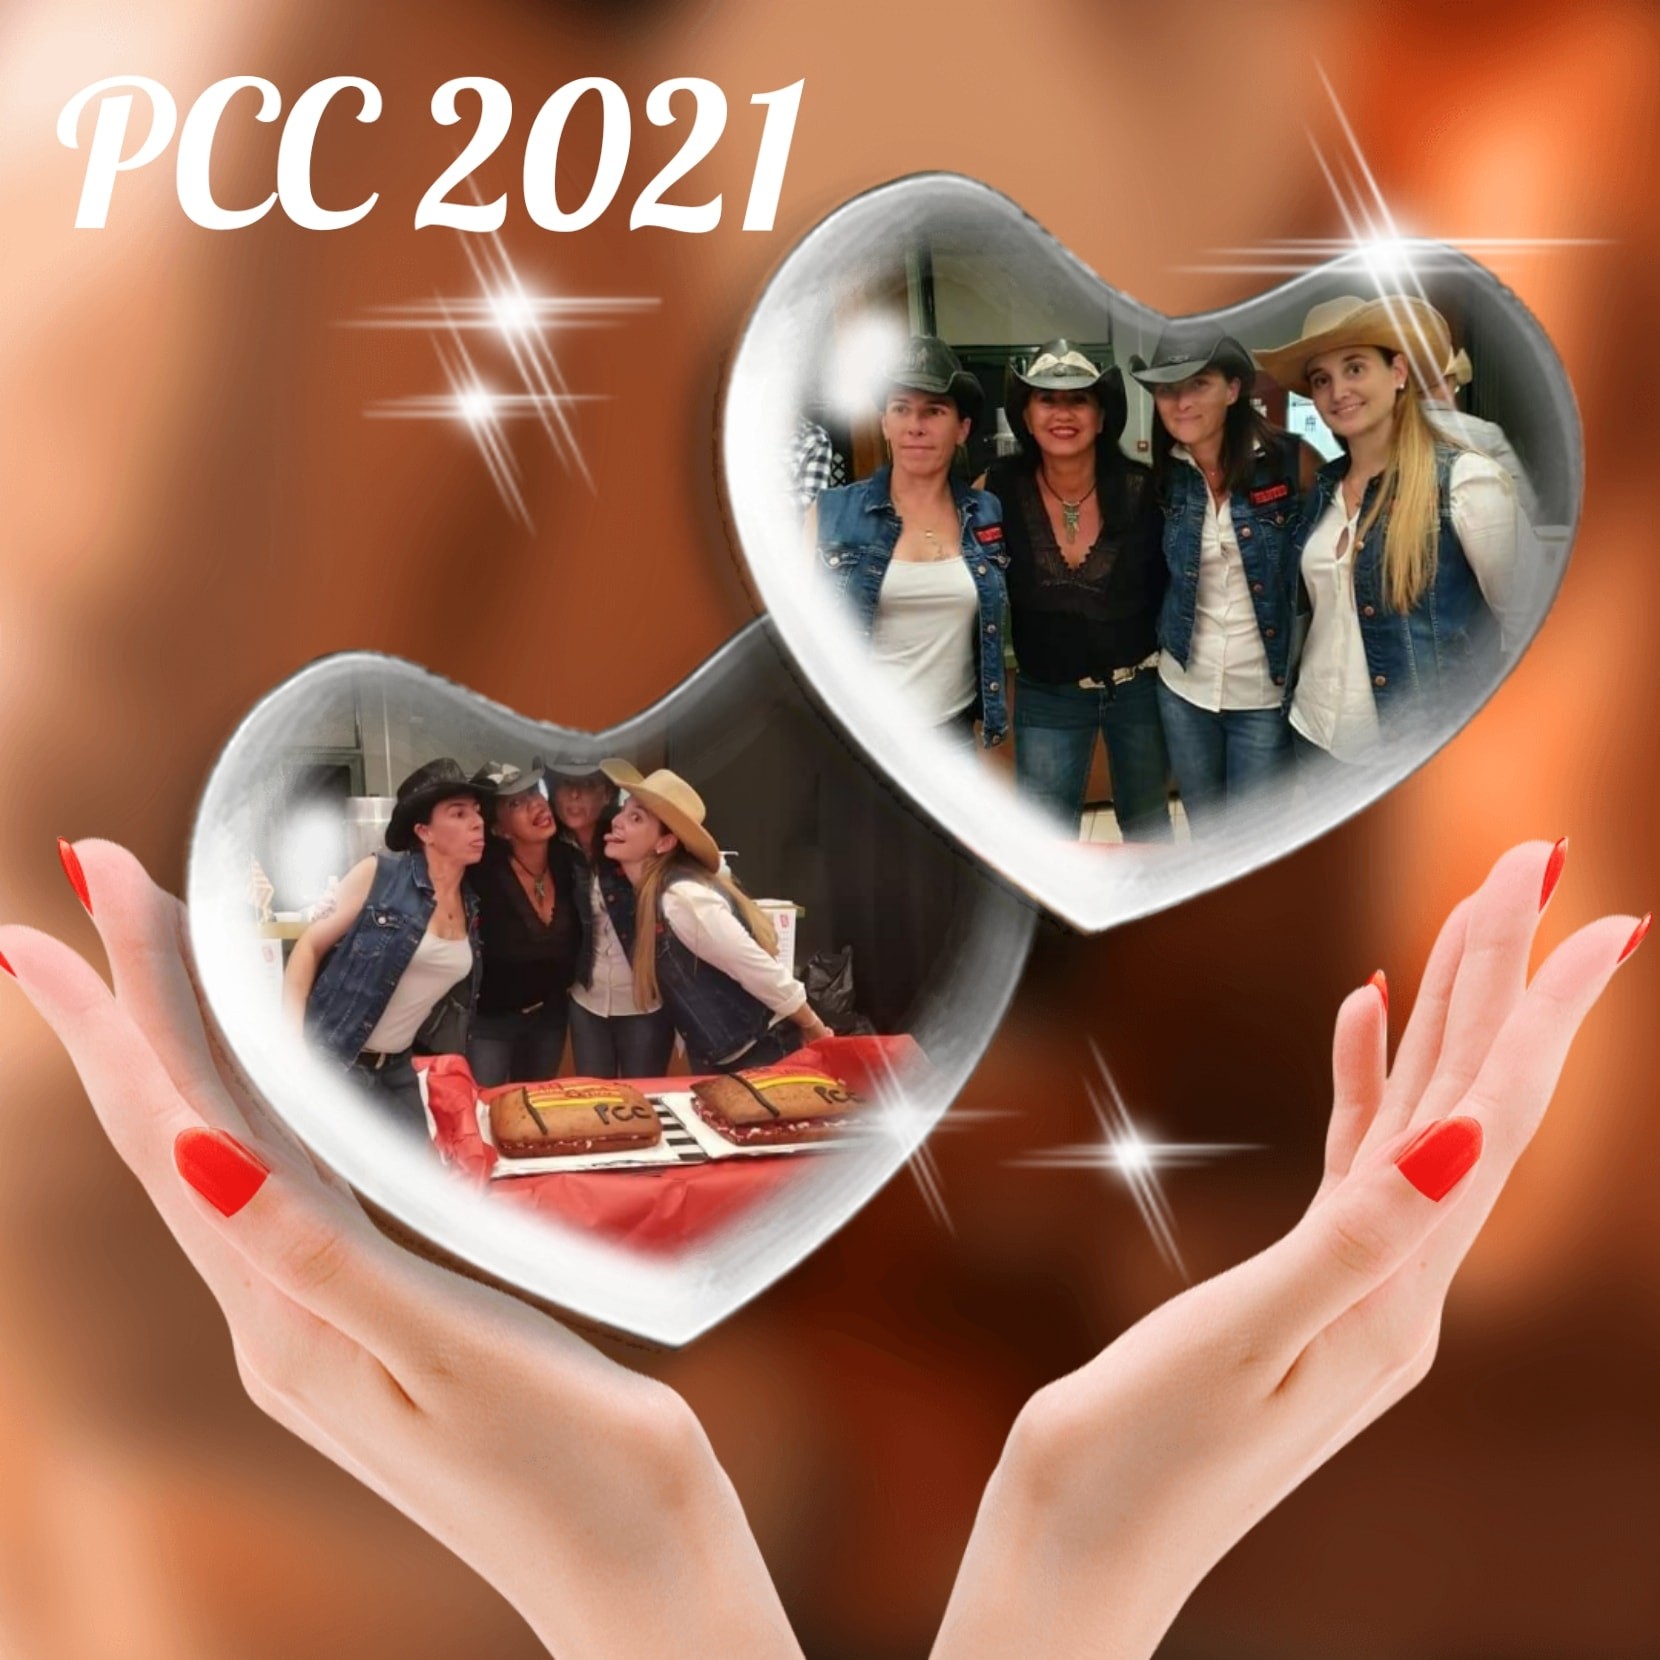 PCC 2021